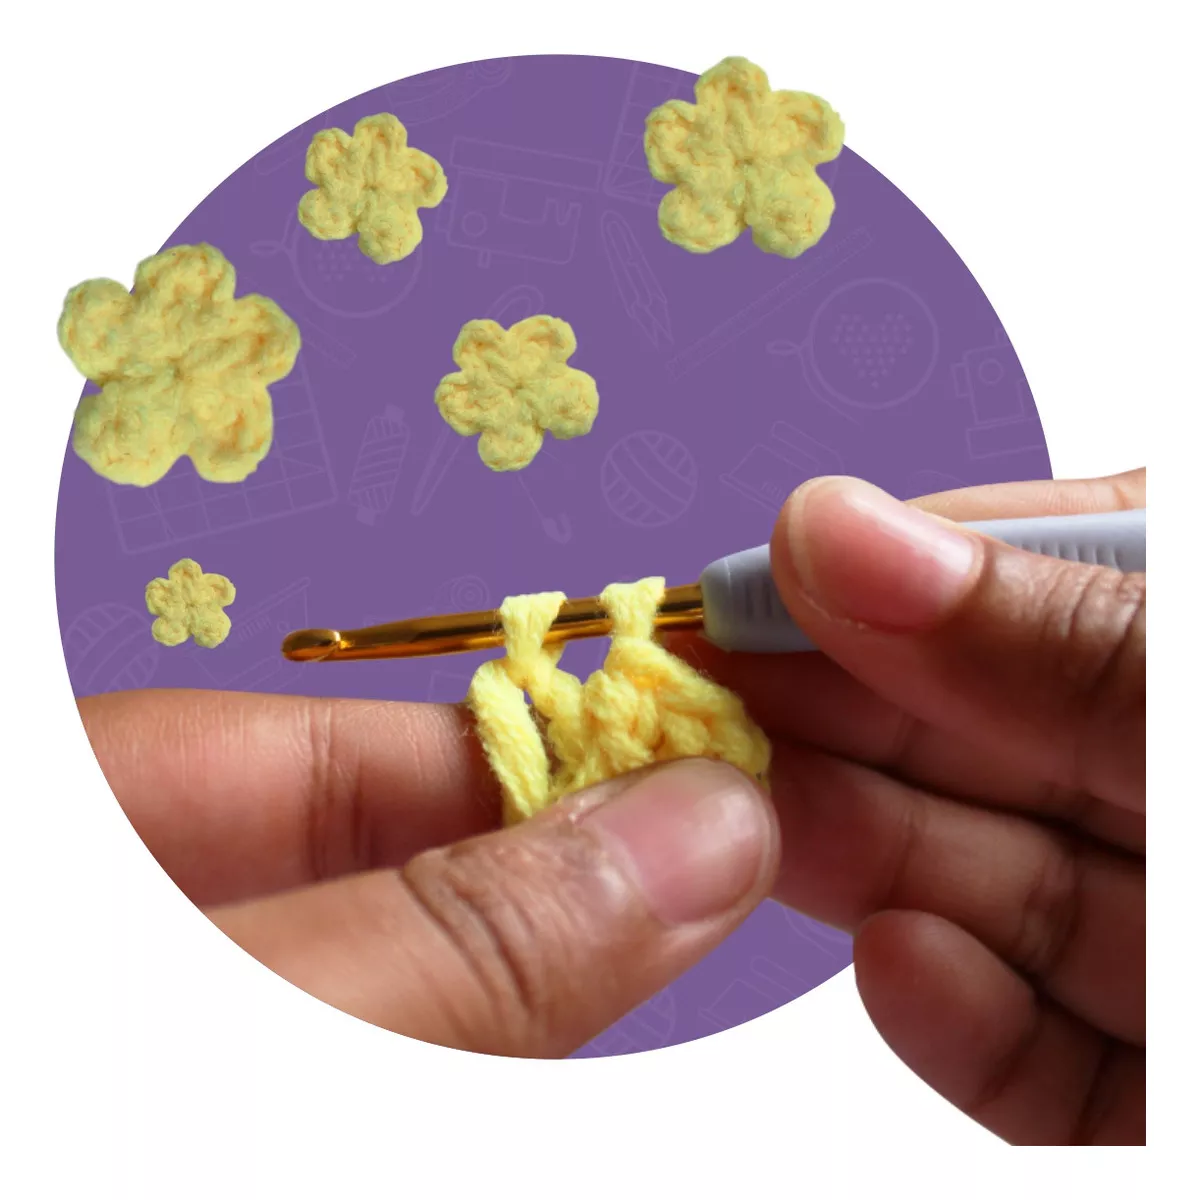 Segunda imagem para pesquisa de agulha croche